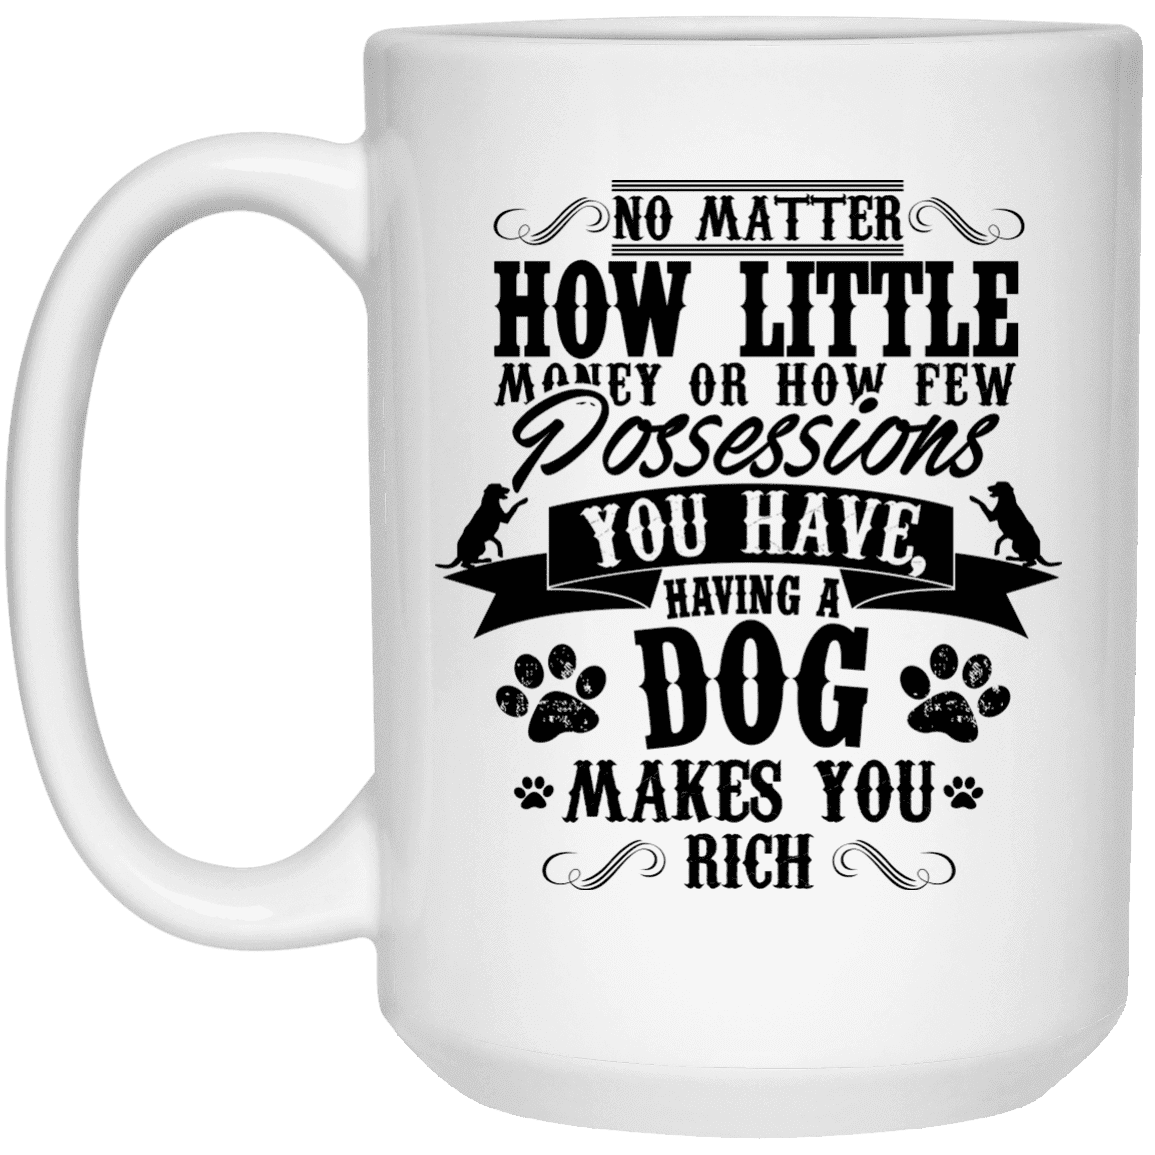 Dogs Make You Rich - Mugs.